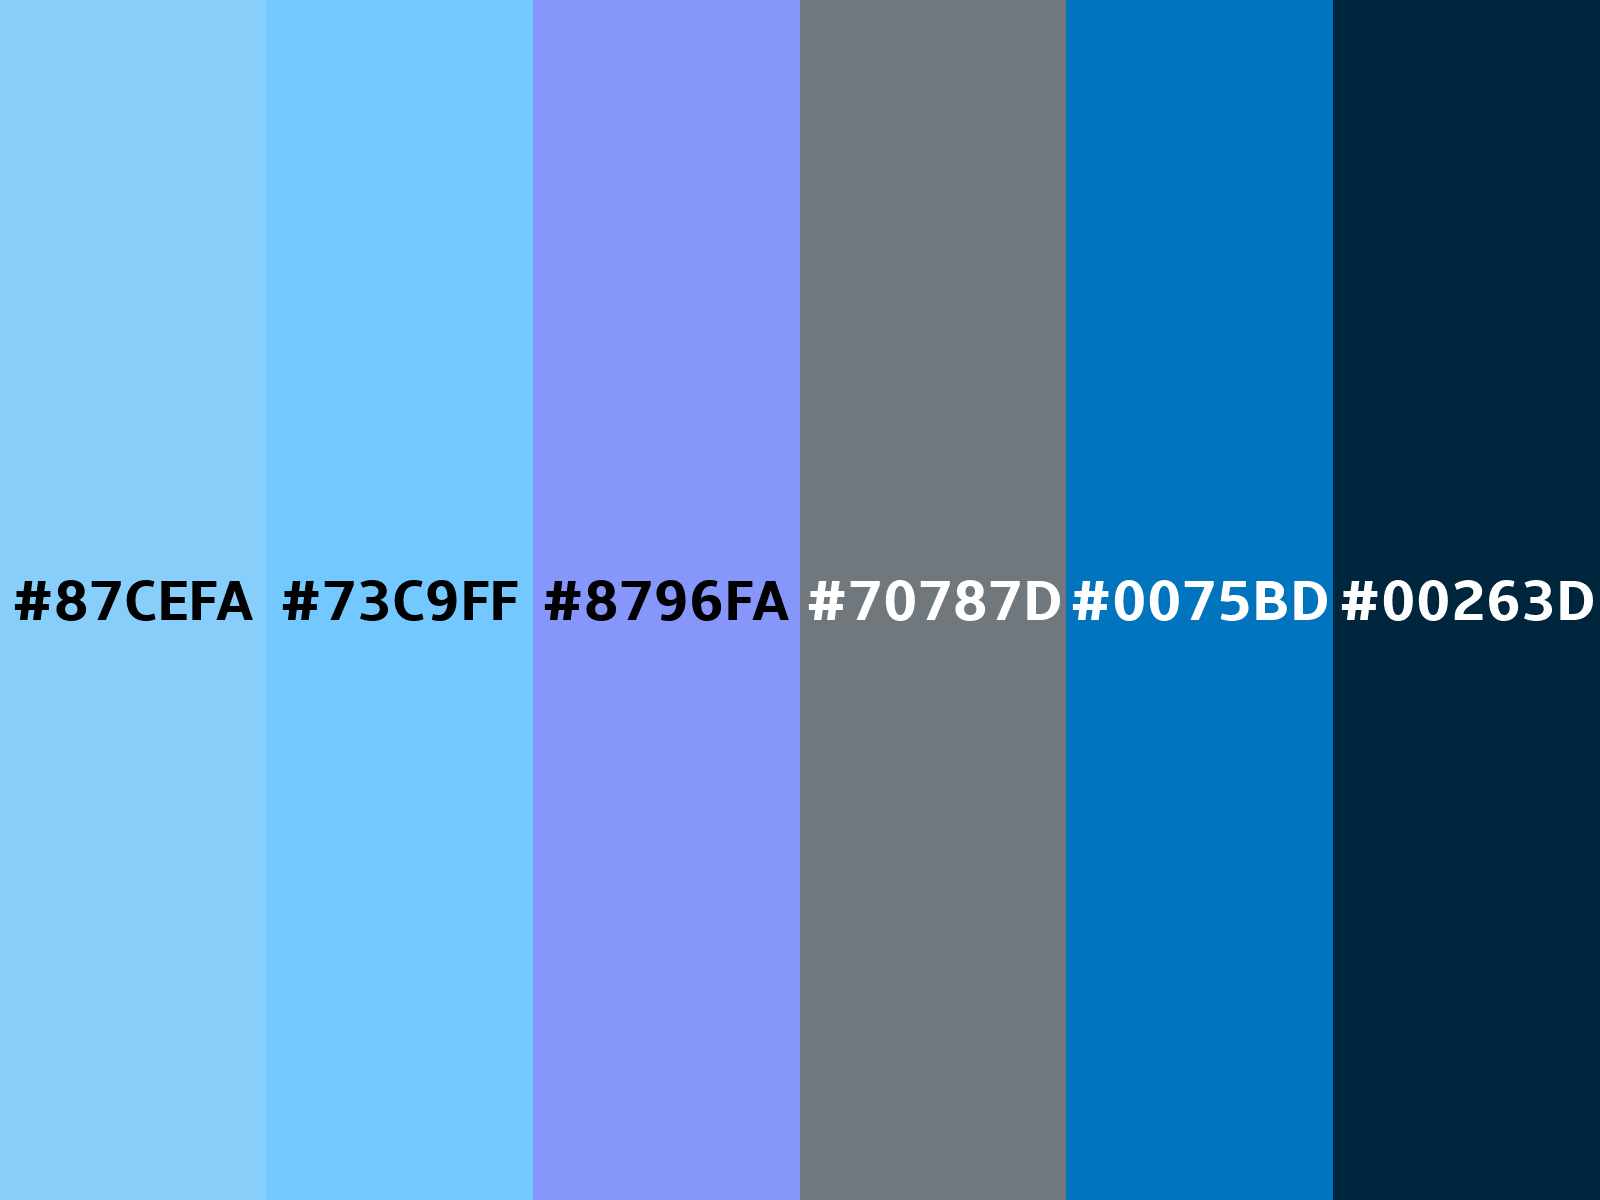 Lightskyblue color (Hex 87CEFA)